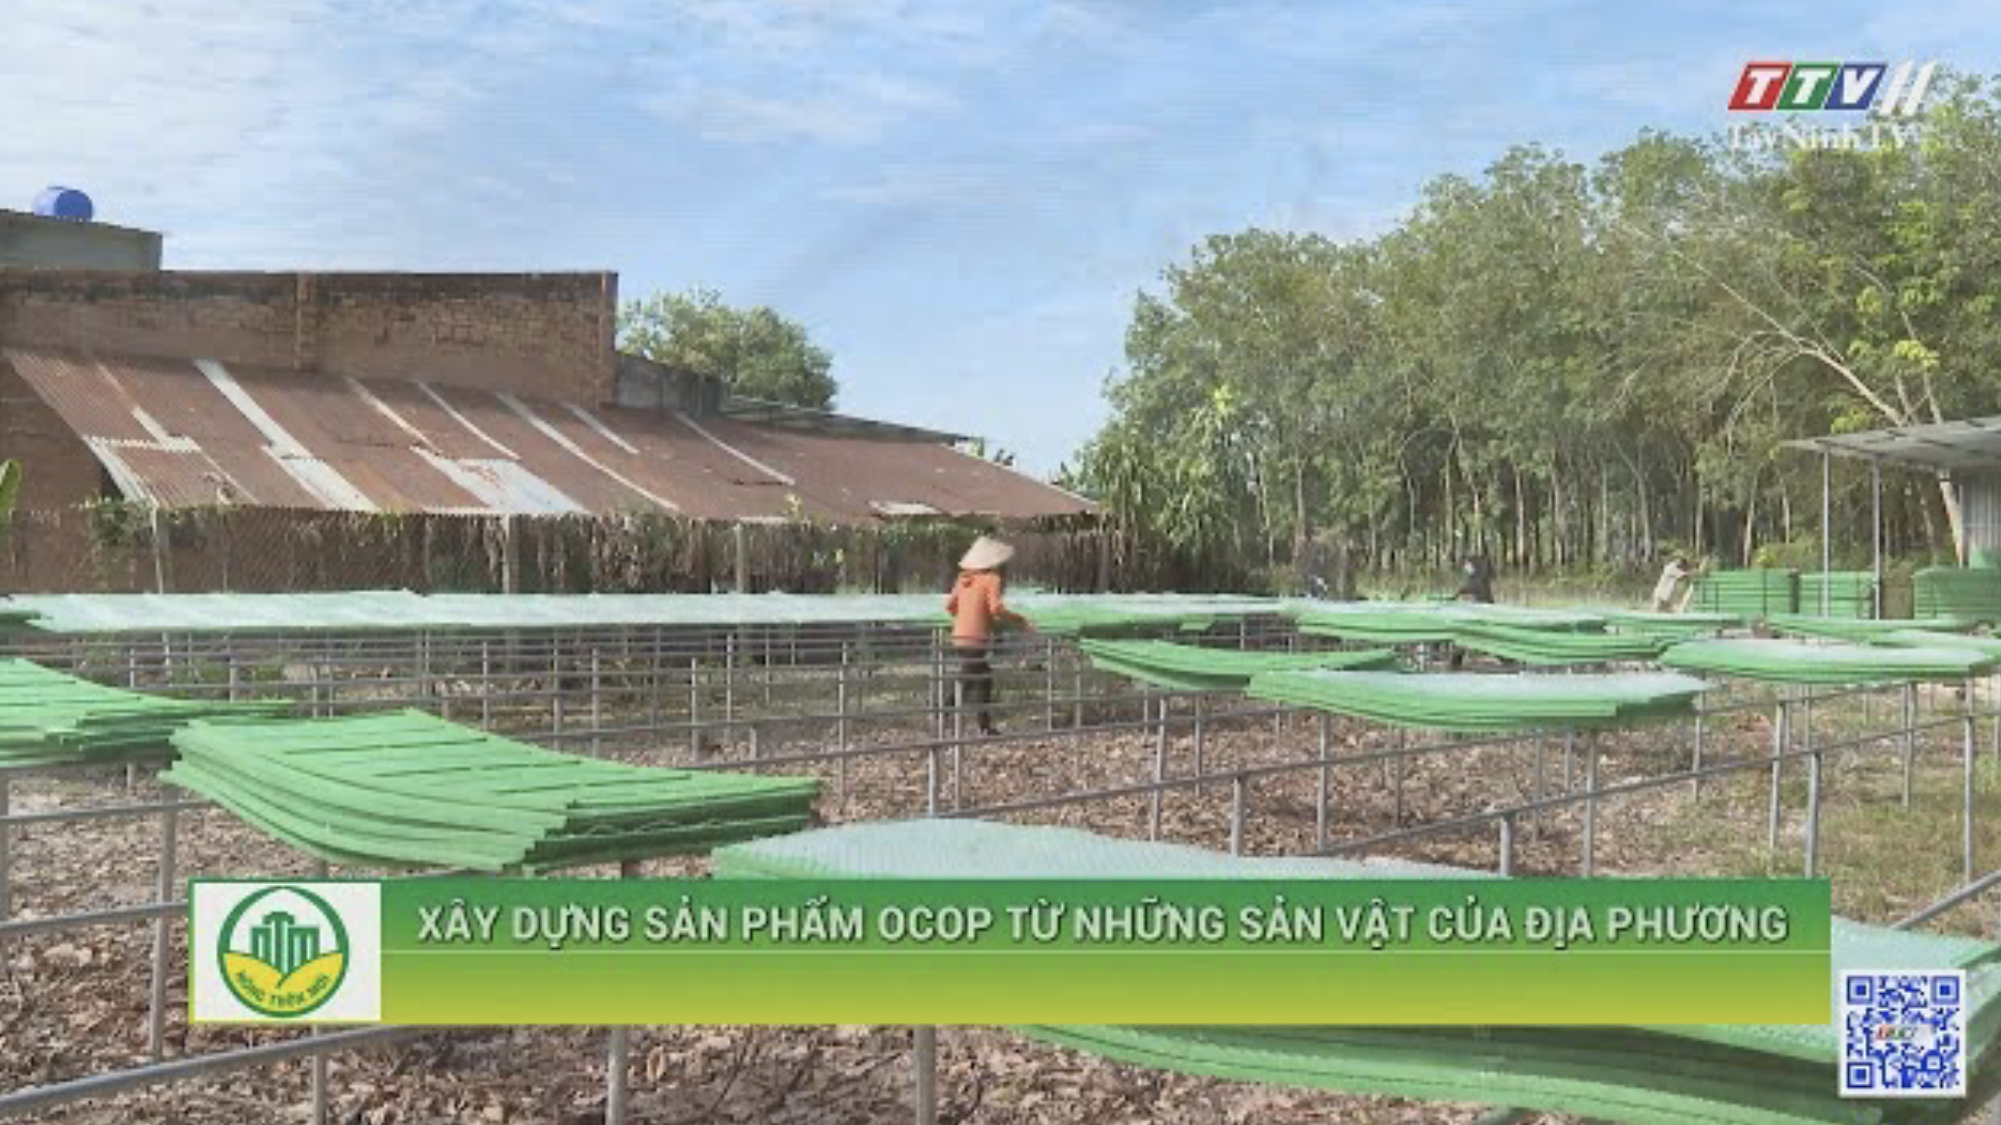 XÂY DỰNG SẢN PHẨM OCOP TỪ NHỮNG SẢN VẬT CỦA ĐỊA PHƯƠNG | Tây Ninh xây dựng nông thôn mới | TayNinhTV